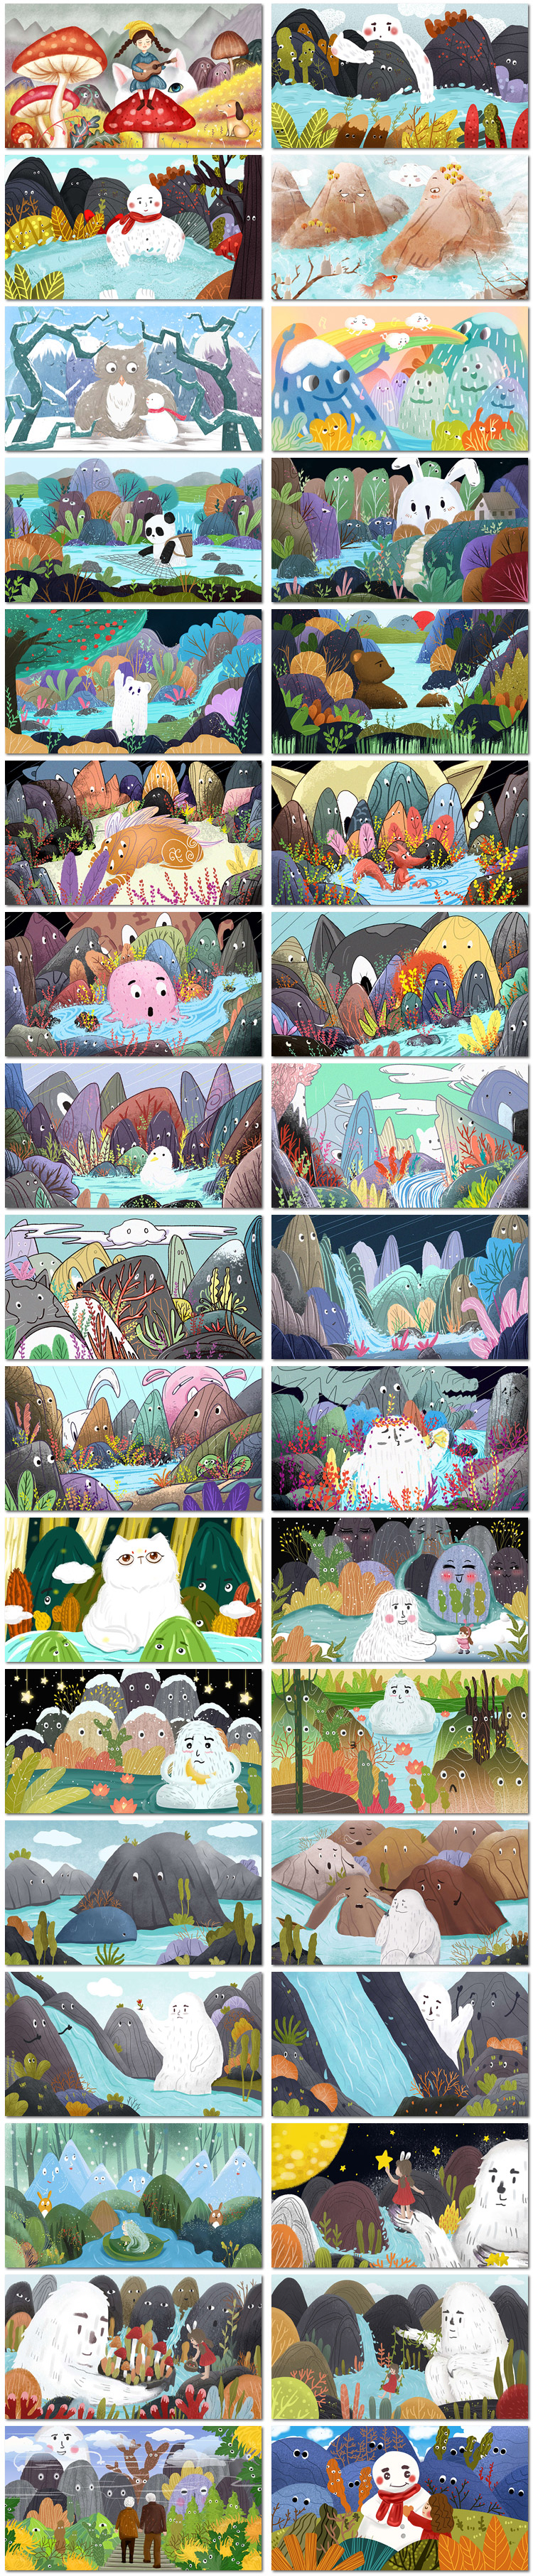 大自然野生动物山林物山神植物水墨卡通插画海报psd模板素材设计